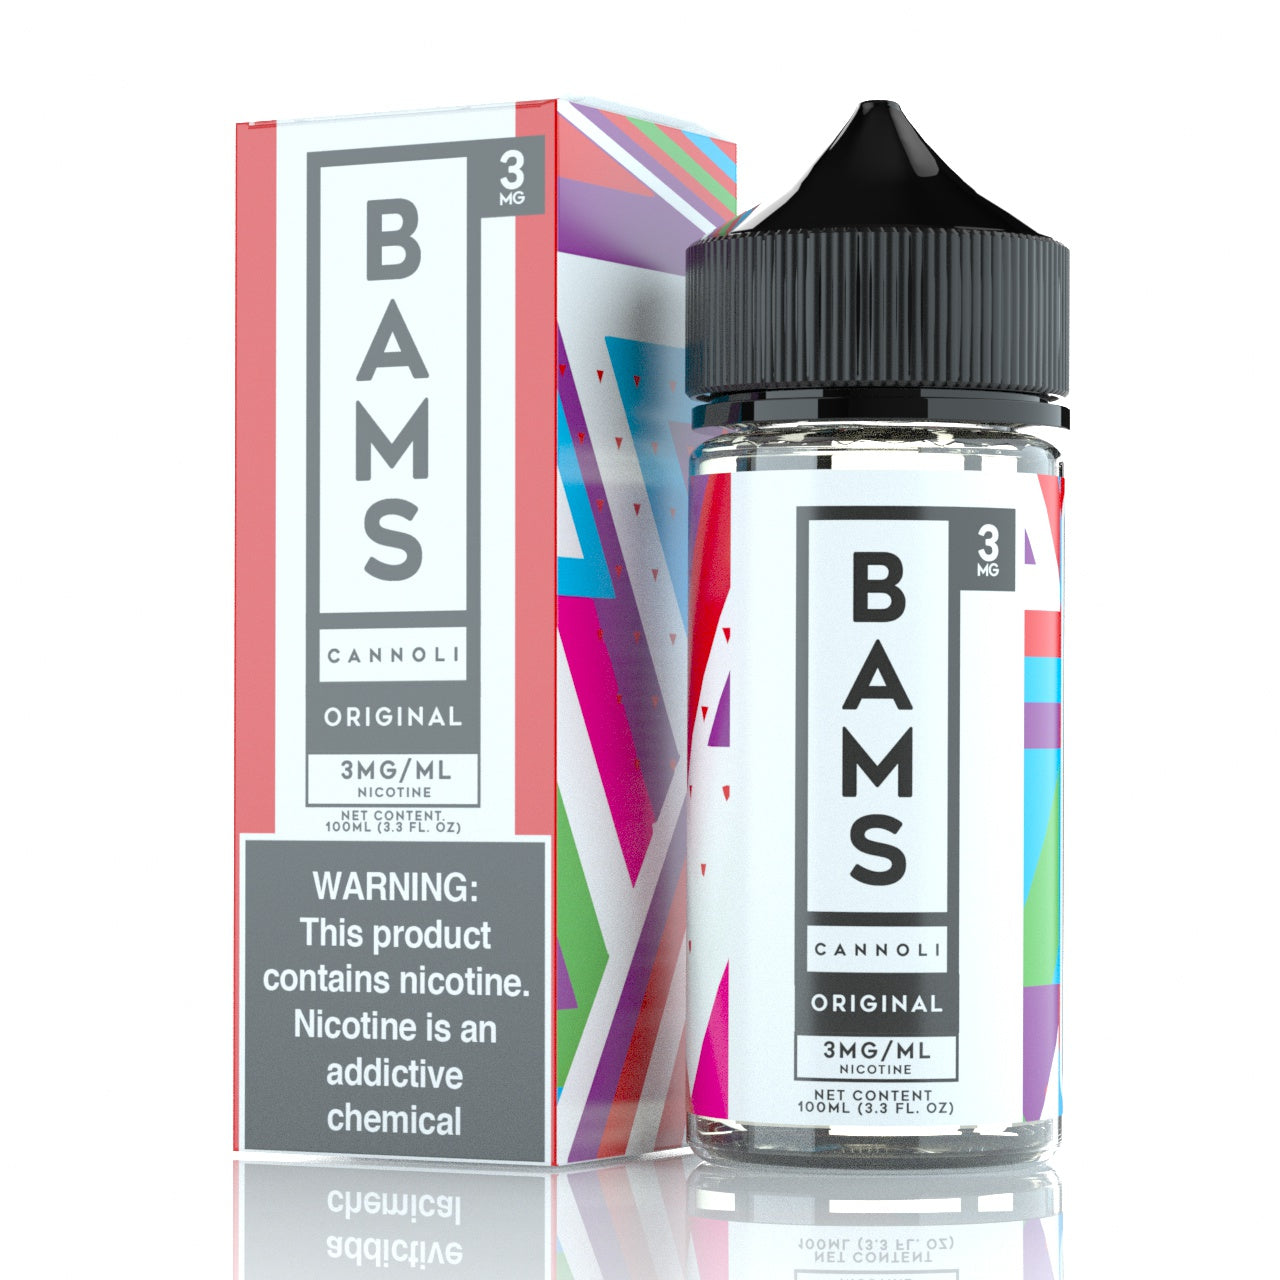 Bam Bam’s Cannoli E-Liquid 100mL (Freebase) | Original Cannoli with packaging